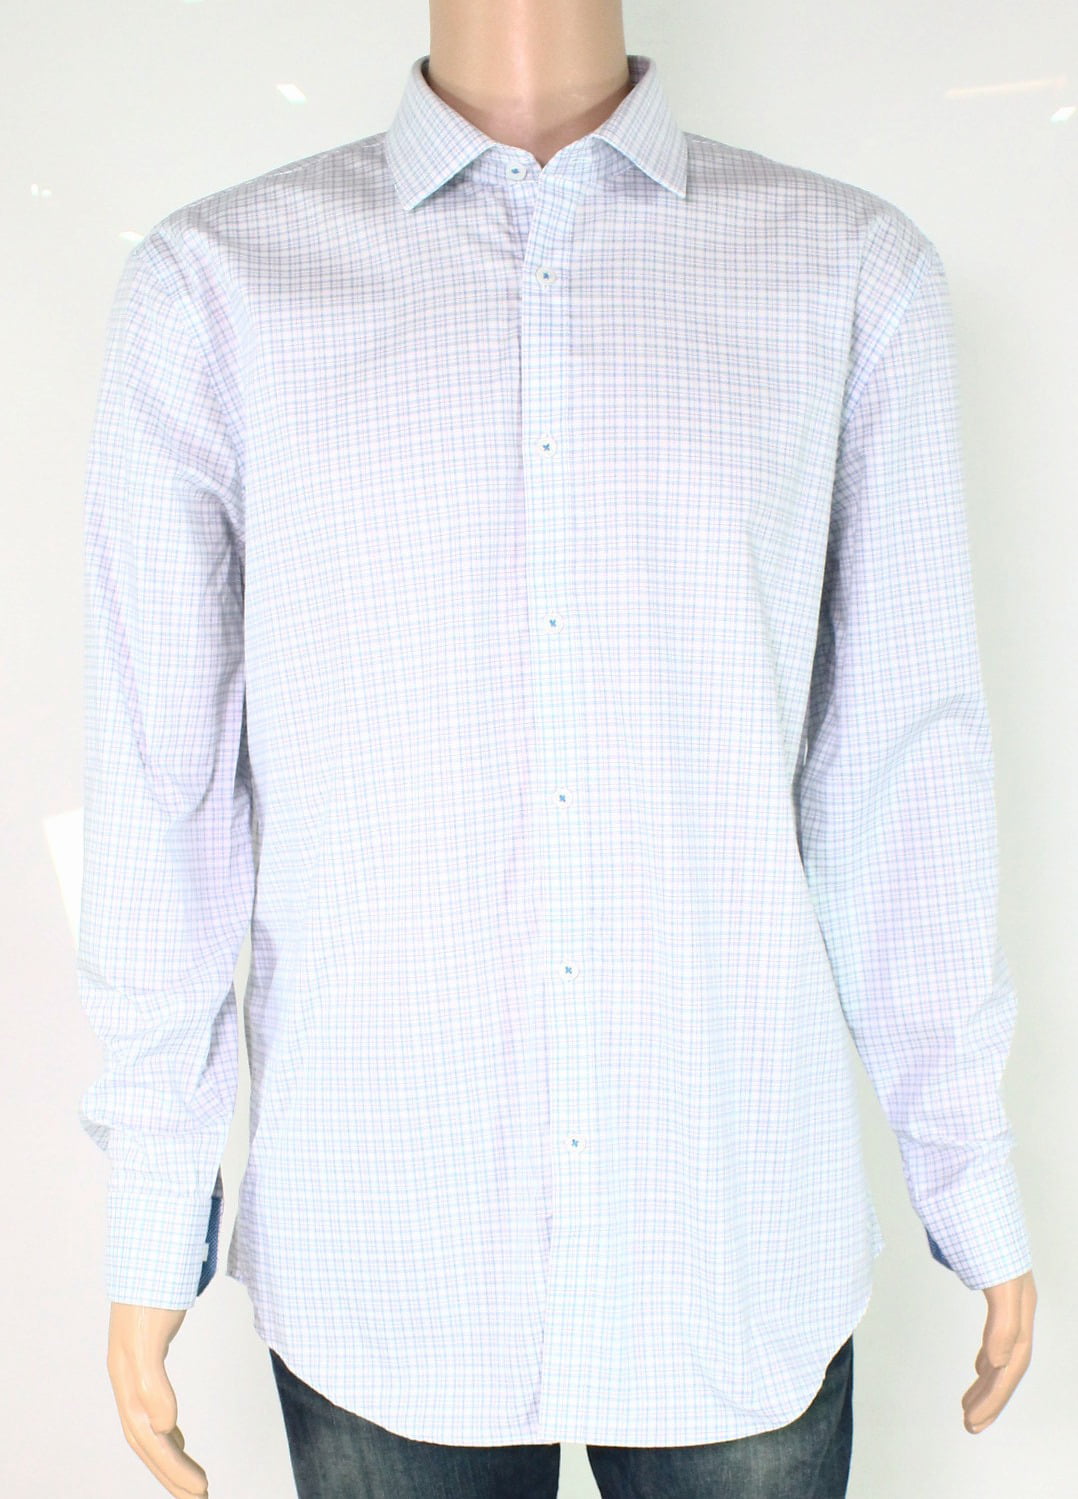 Ryan Seacrest Distinction Dress Shirts - Mens Dress Shirt Plaid Slim ...